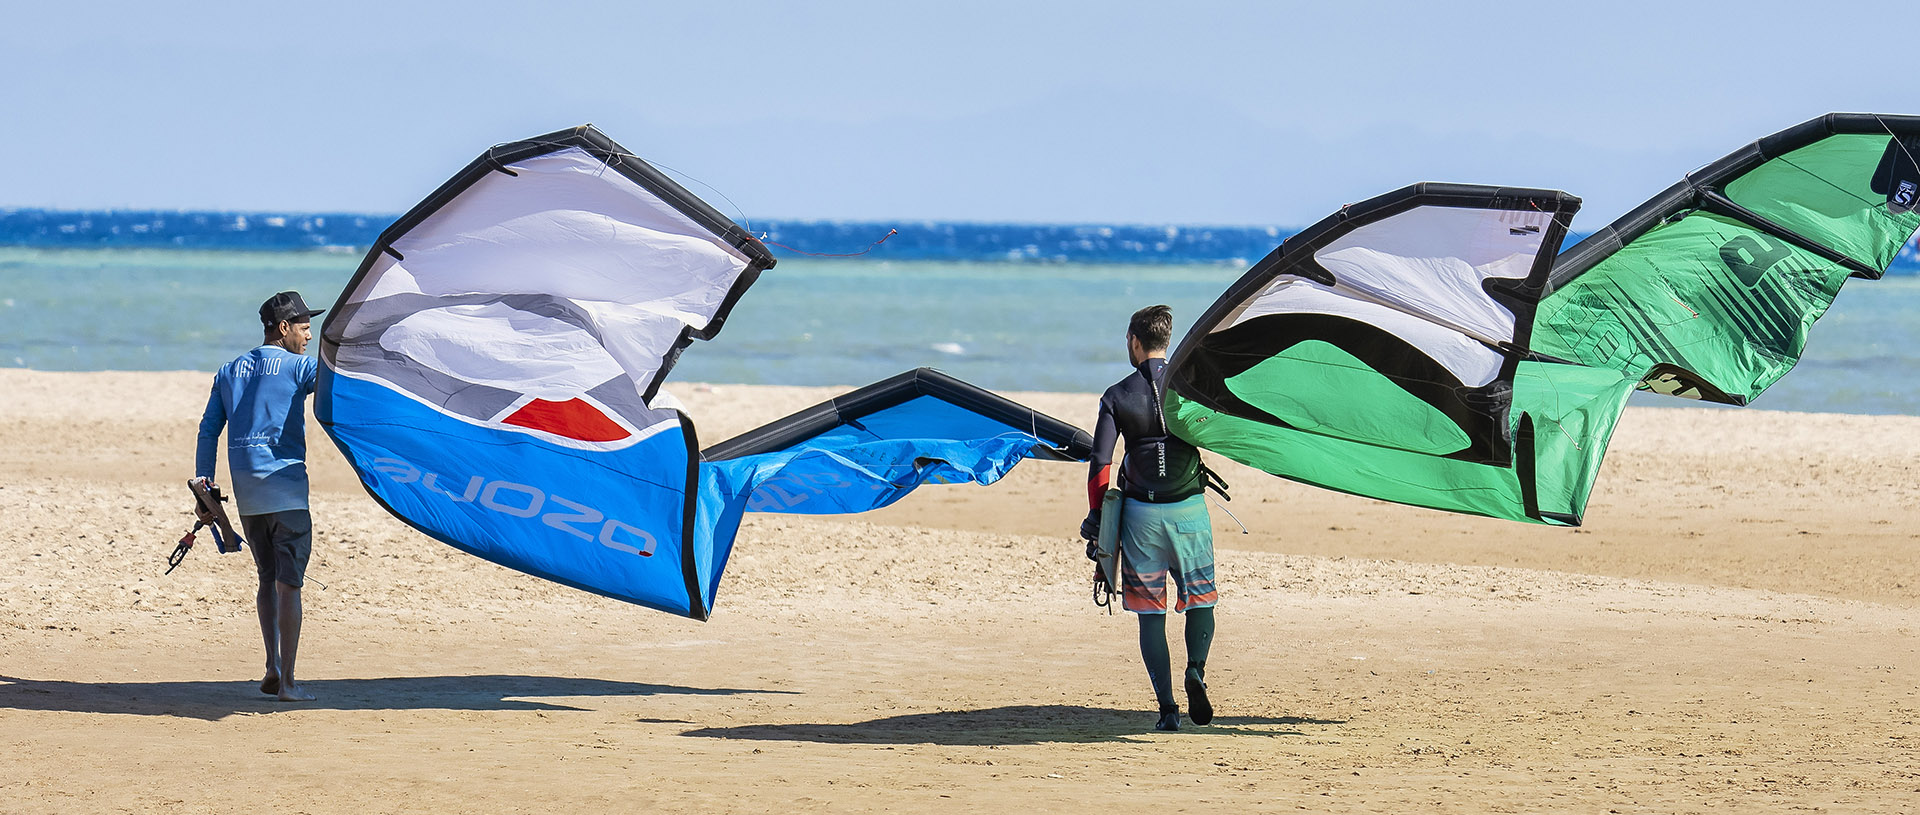 Kitesurfing Egypt El Gouna